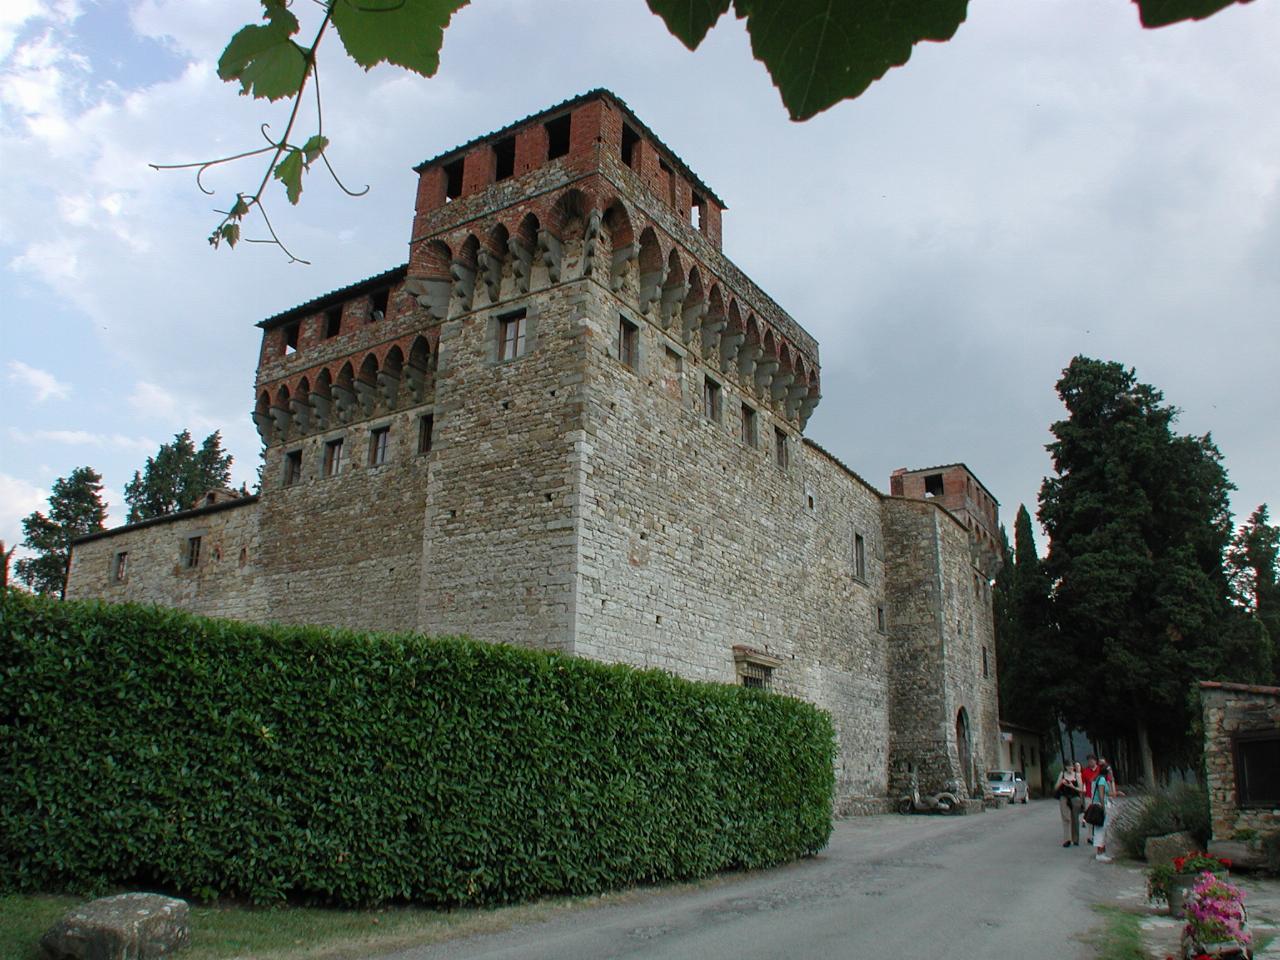 Castello del Trebbio from the outside